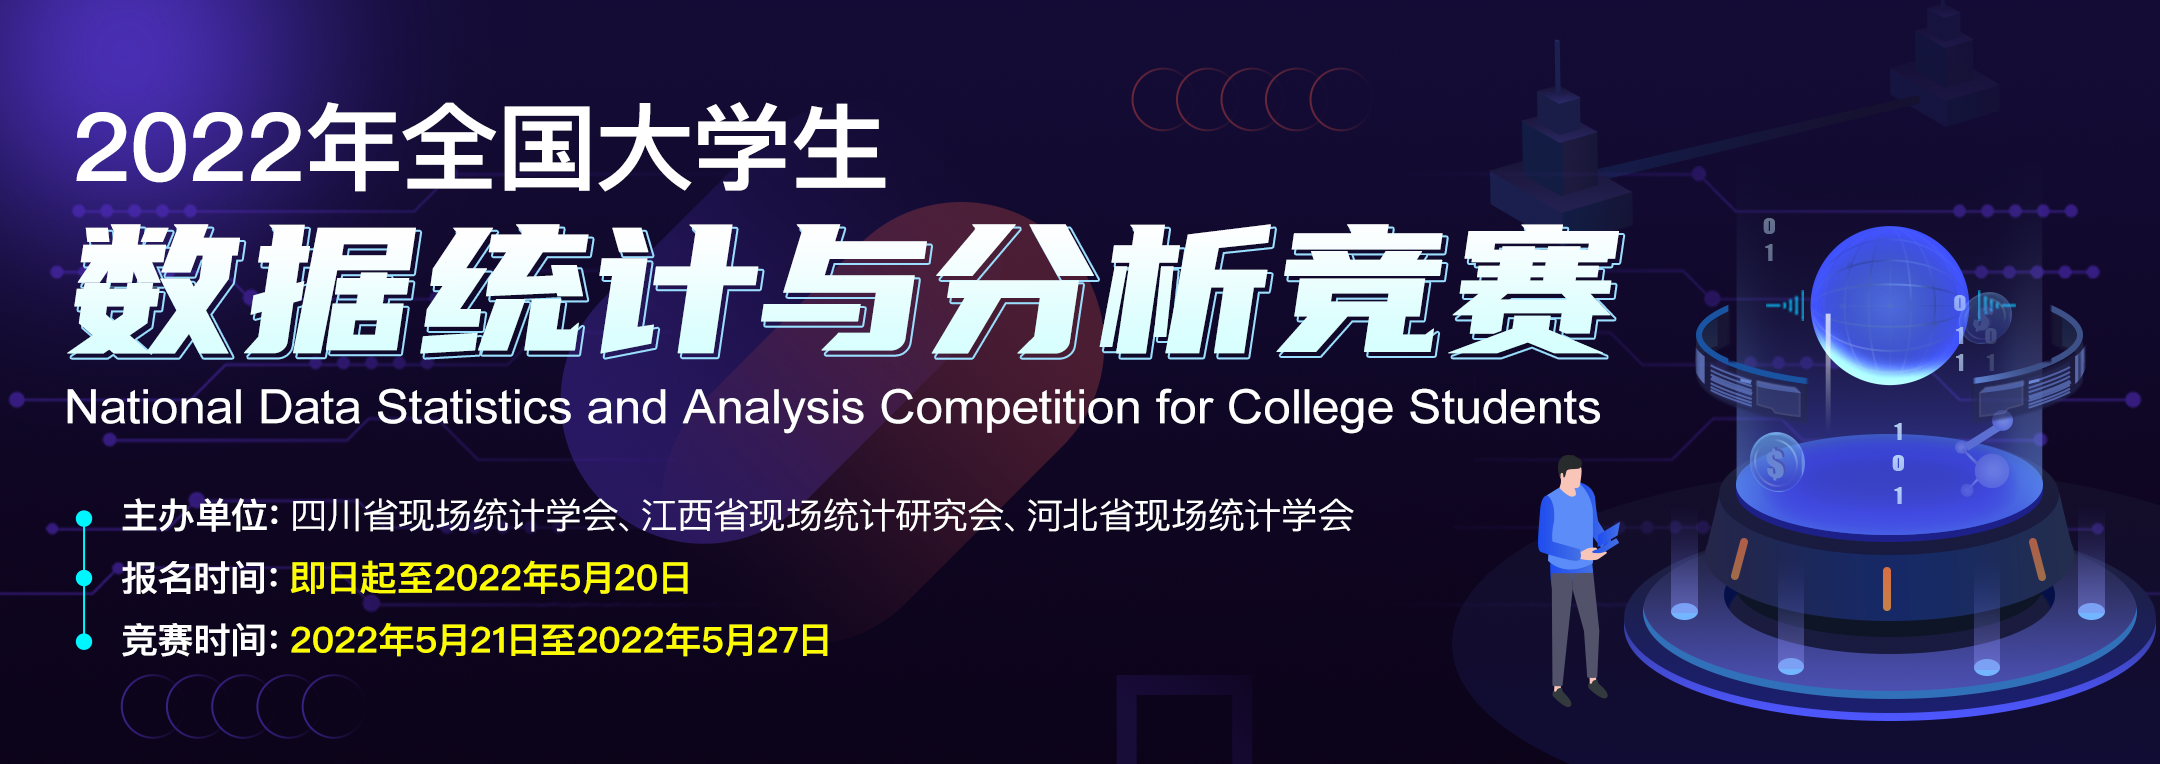 2022年全国大学生数据统计与分析竞赛-详情页banner1080x382px@2x.png